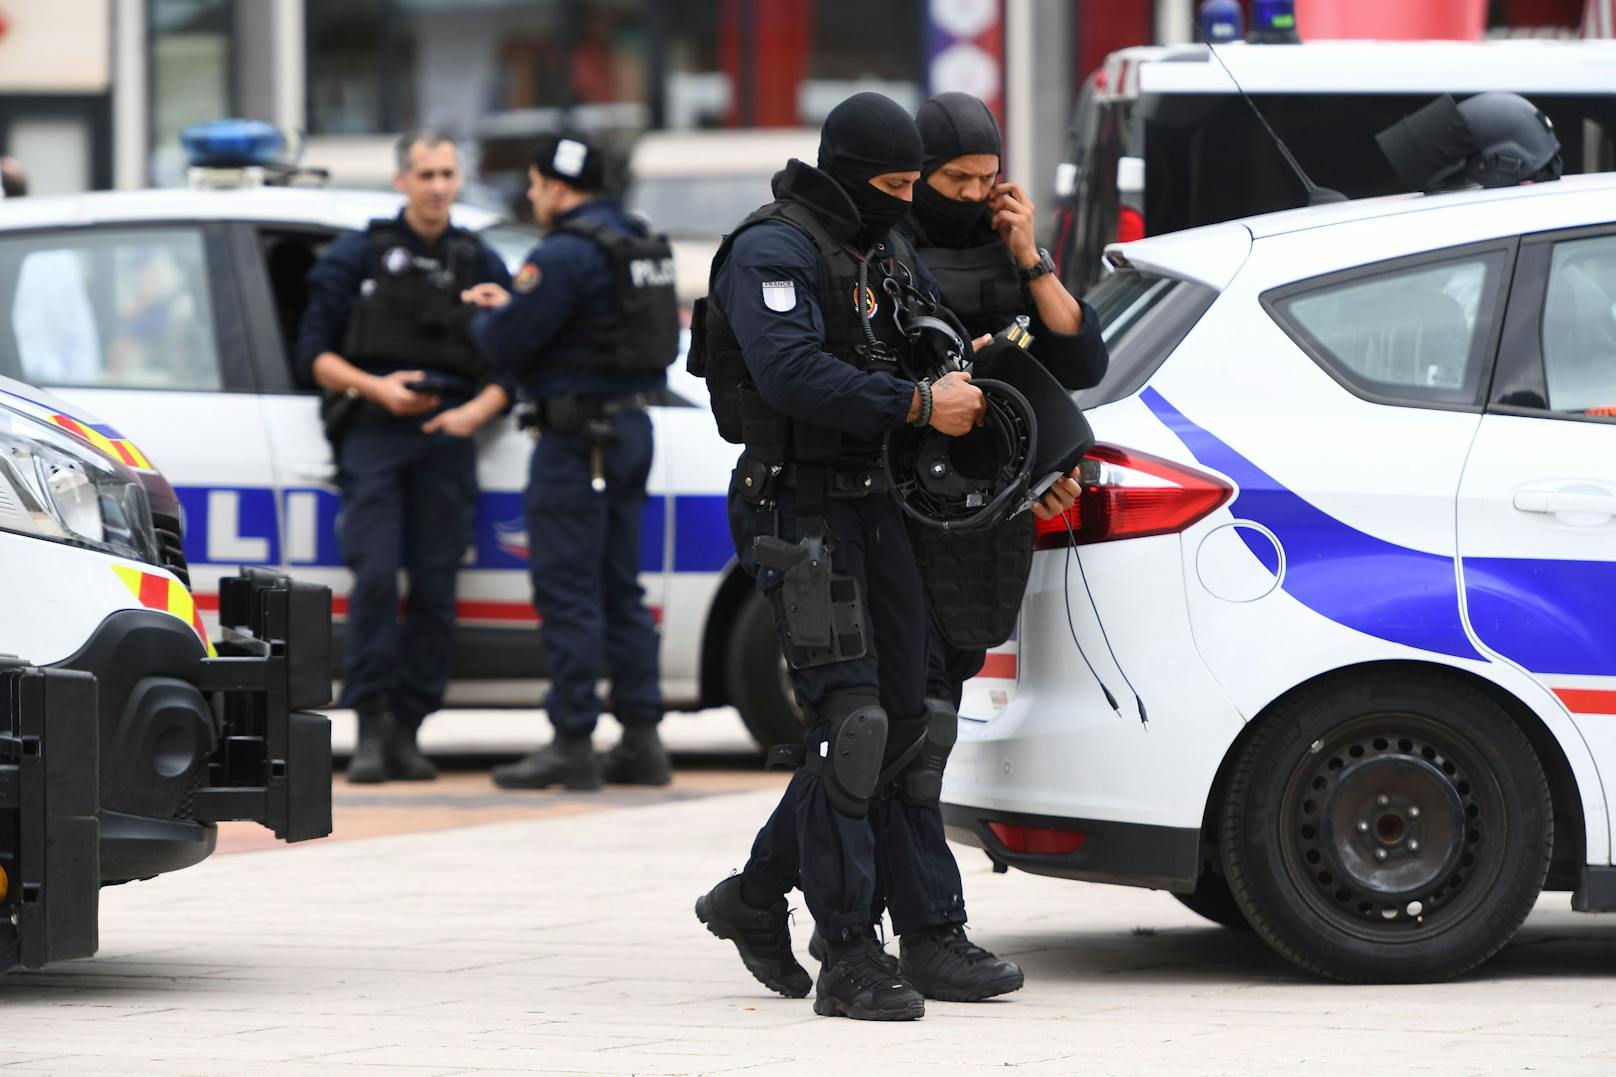 Schwerbewaffnete Polizisten und Soldaten räumten ein Einkaufszentrum in Paris. Zuvor war ein Bewaffneter im Inneren gemeldet worden.